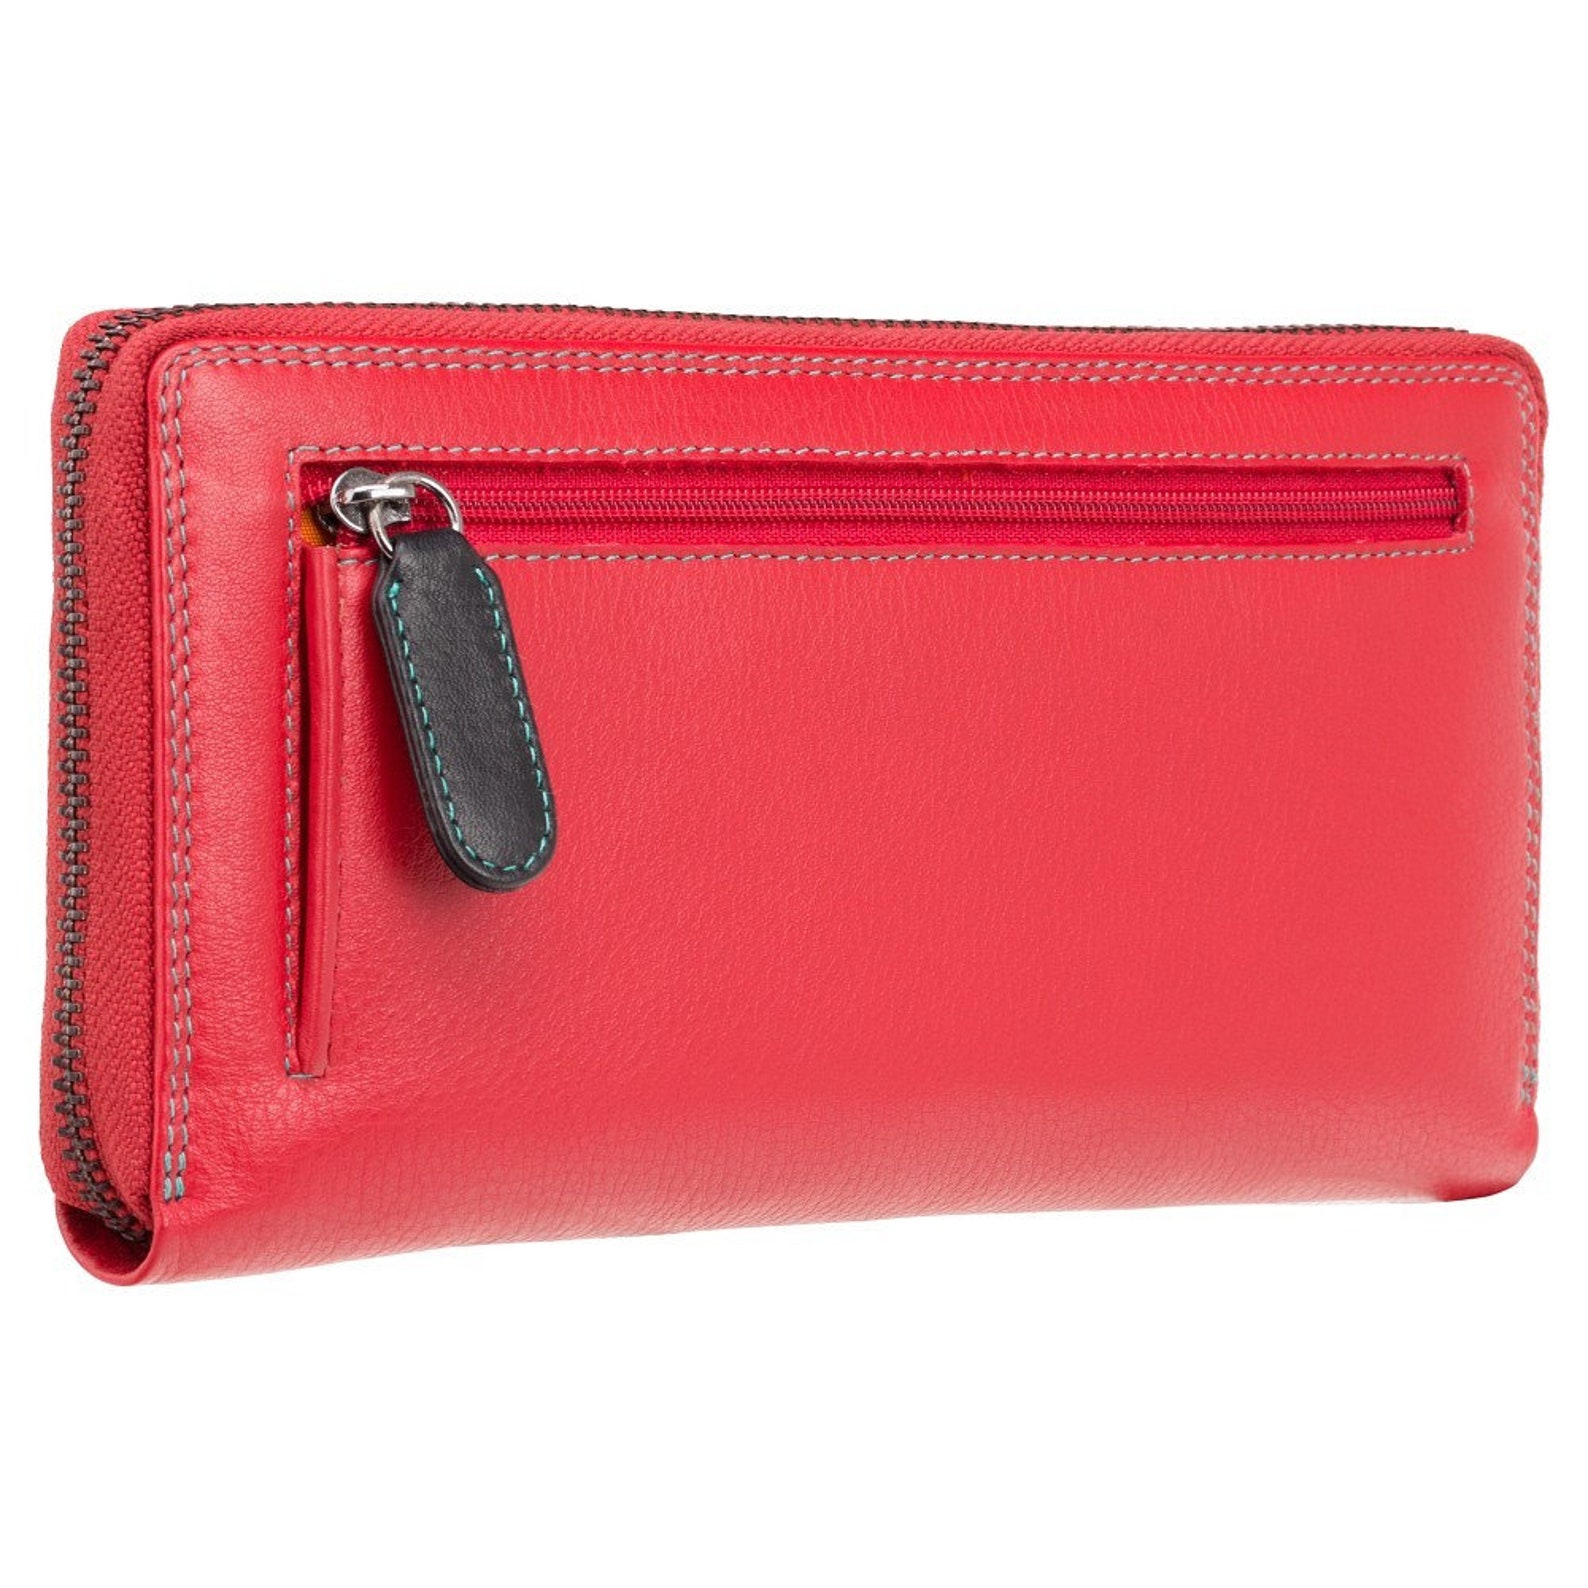 RED Leather Zip Around Purse Wallet Womens Zip Around | Etsy